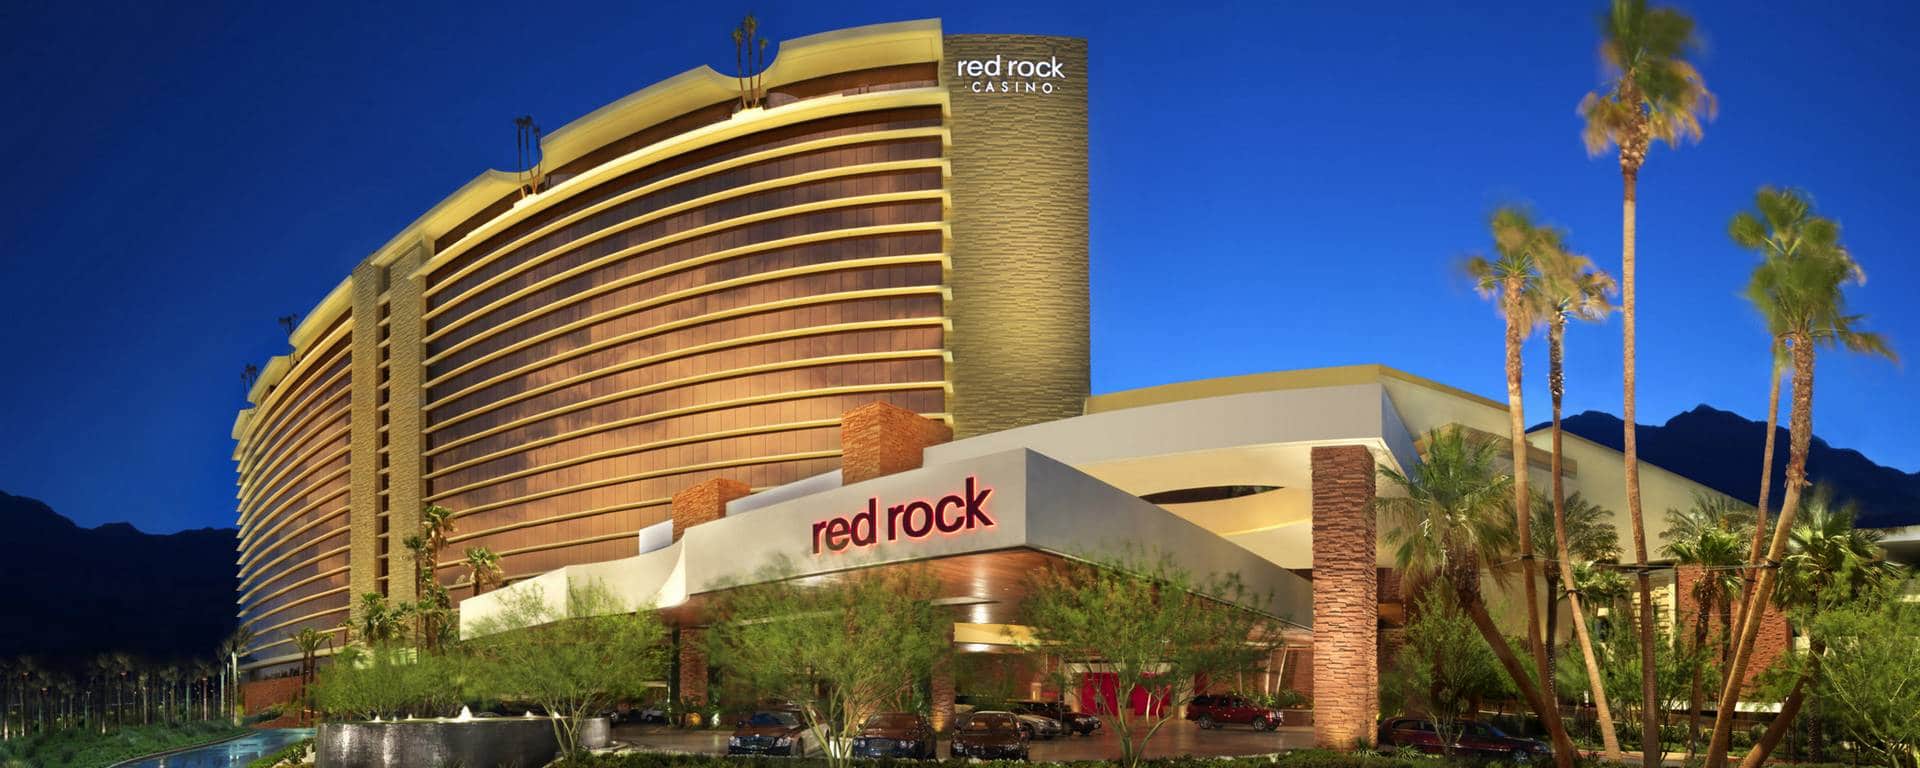 red rock casino annual revenue